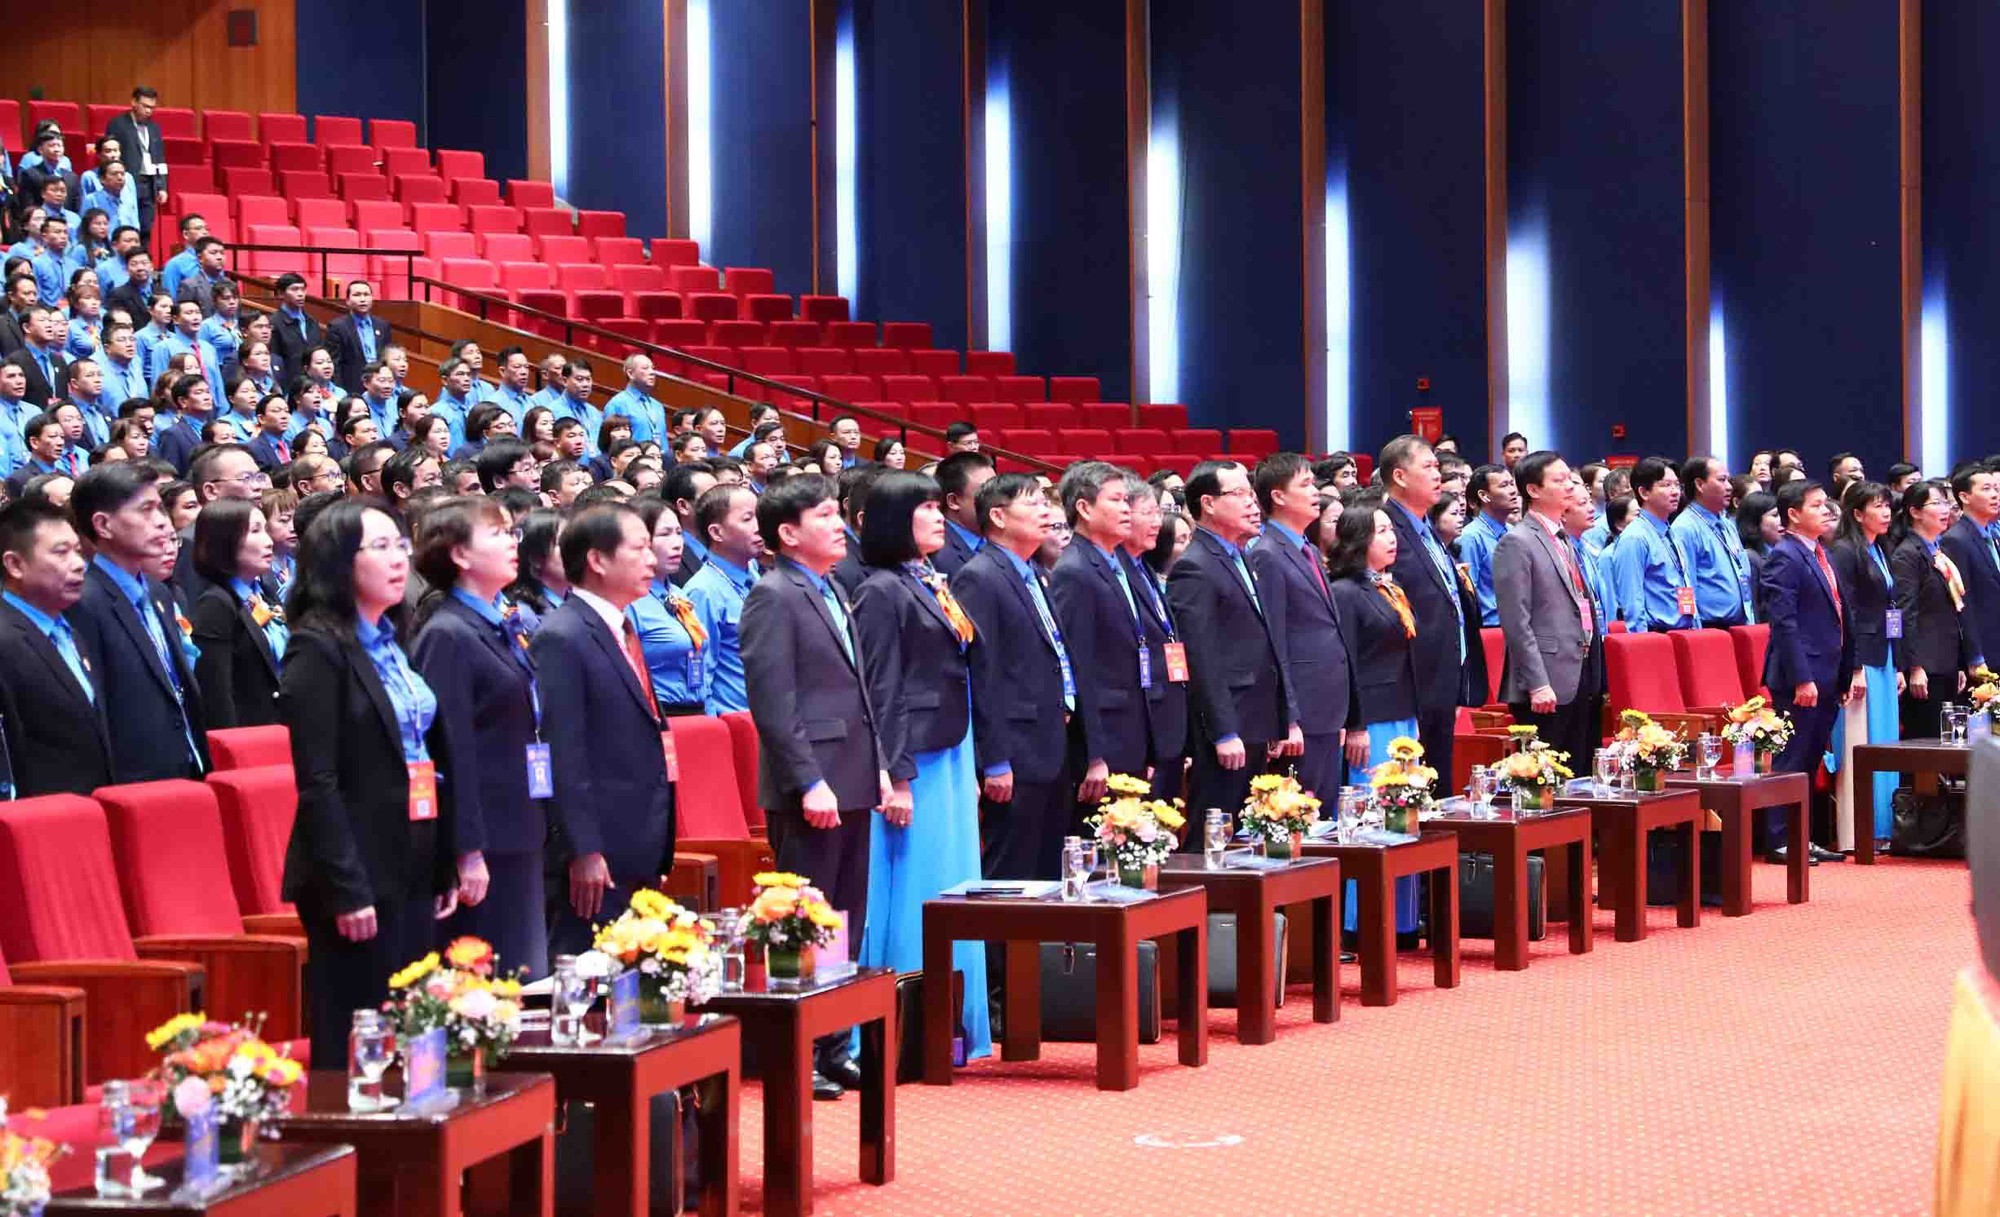 Chùm ảnh: Khai mạc Đại hội XIII Công đoàn Việt Nam, nhiệm kỳ 2023 - 2028 - Ảnh 5.